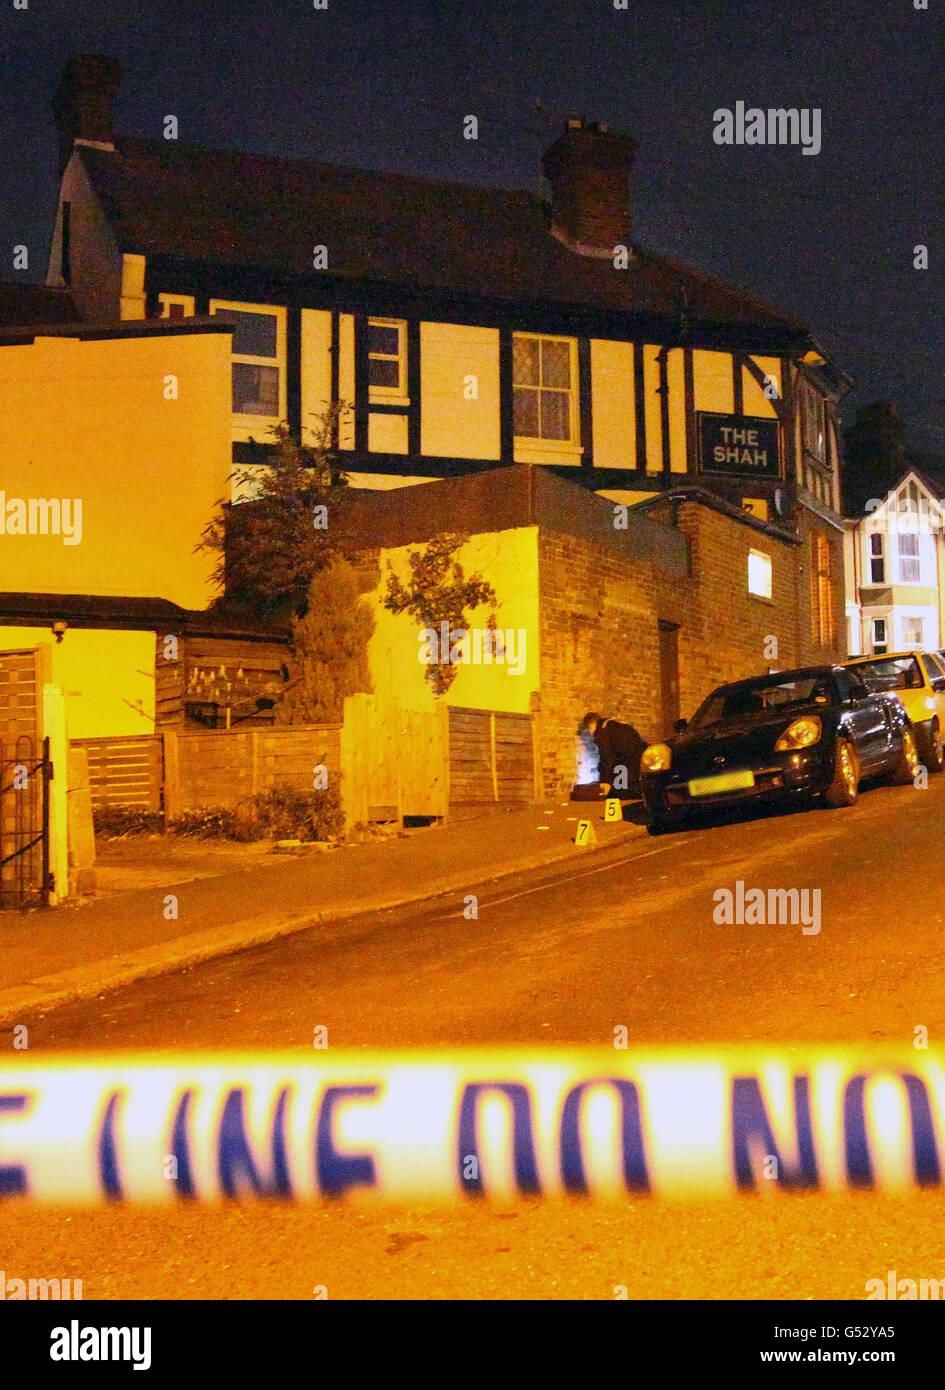 Une police enquête sur les scènes d'un policier à Hastings, dans l'est du Sussex, après qu'un adolescent ait été poignardé à mort lors d'une attaque près de la maison publique Shah. Banque D'Images